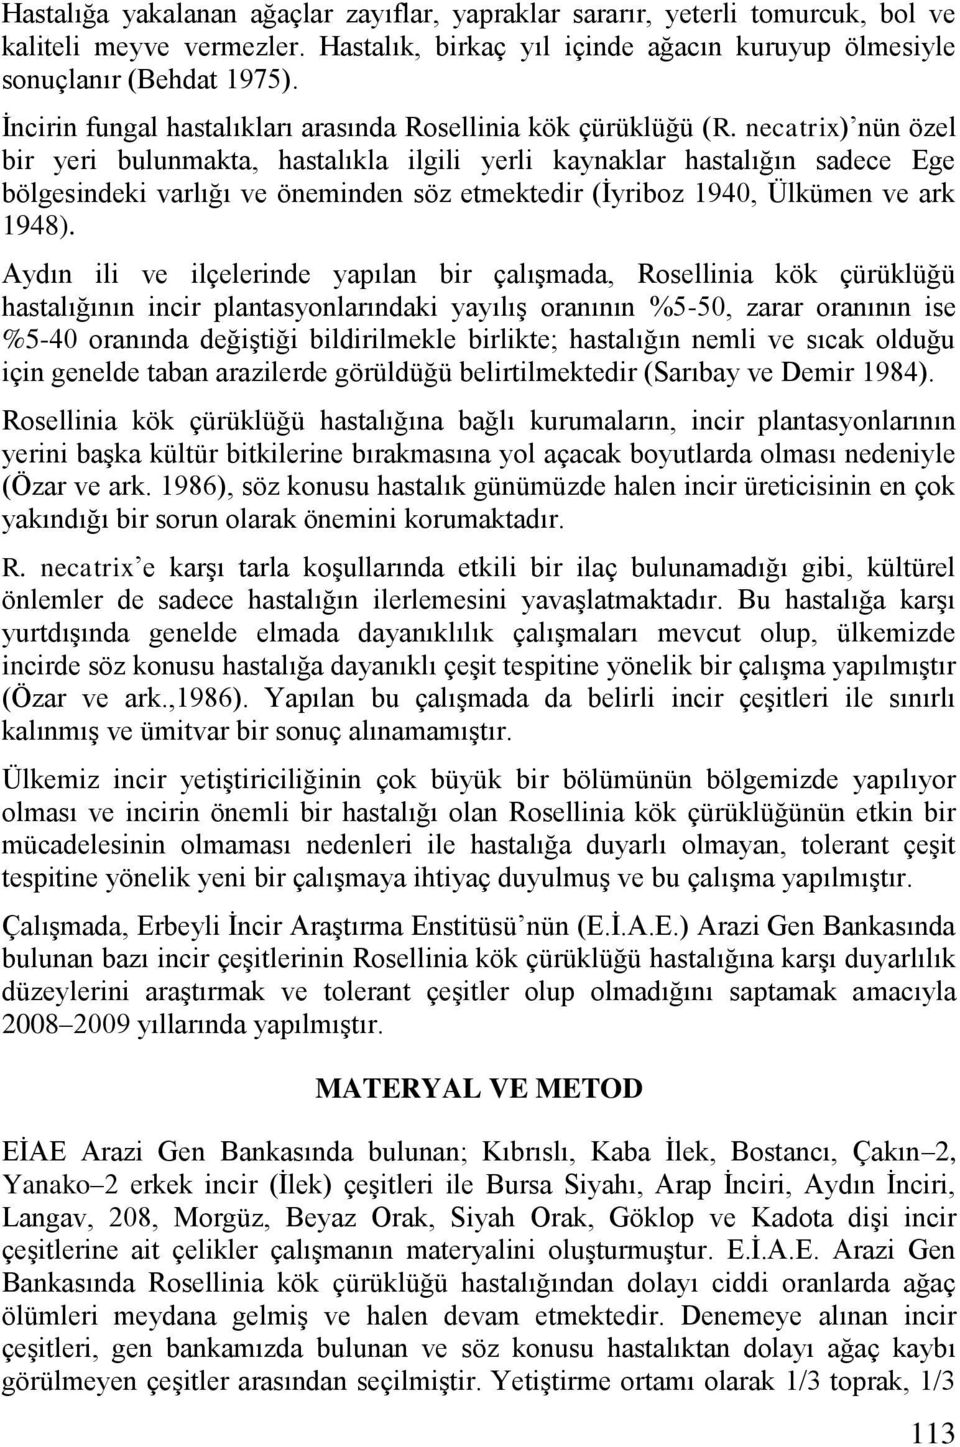 necatrix) nün özel bir yeri bulunmakta, hastalıkla ilgili yerli kaynaklar hastalığın sadece Ege bölgesindeki varlığı ve öneminden söz etmektedir (İyriboz 1940, Ülkümen ve ark 1948).